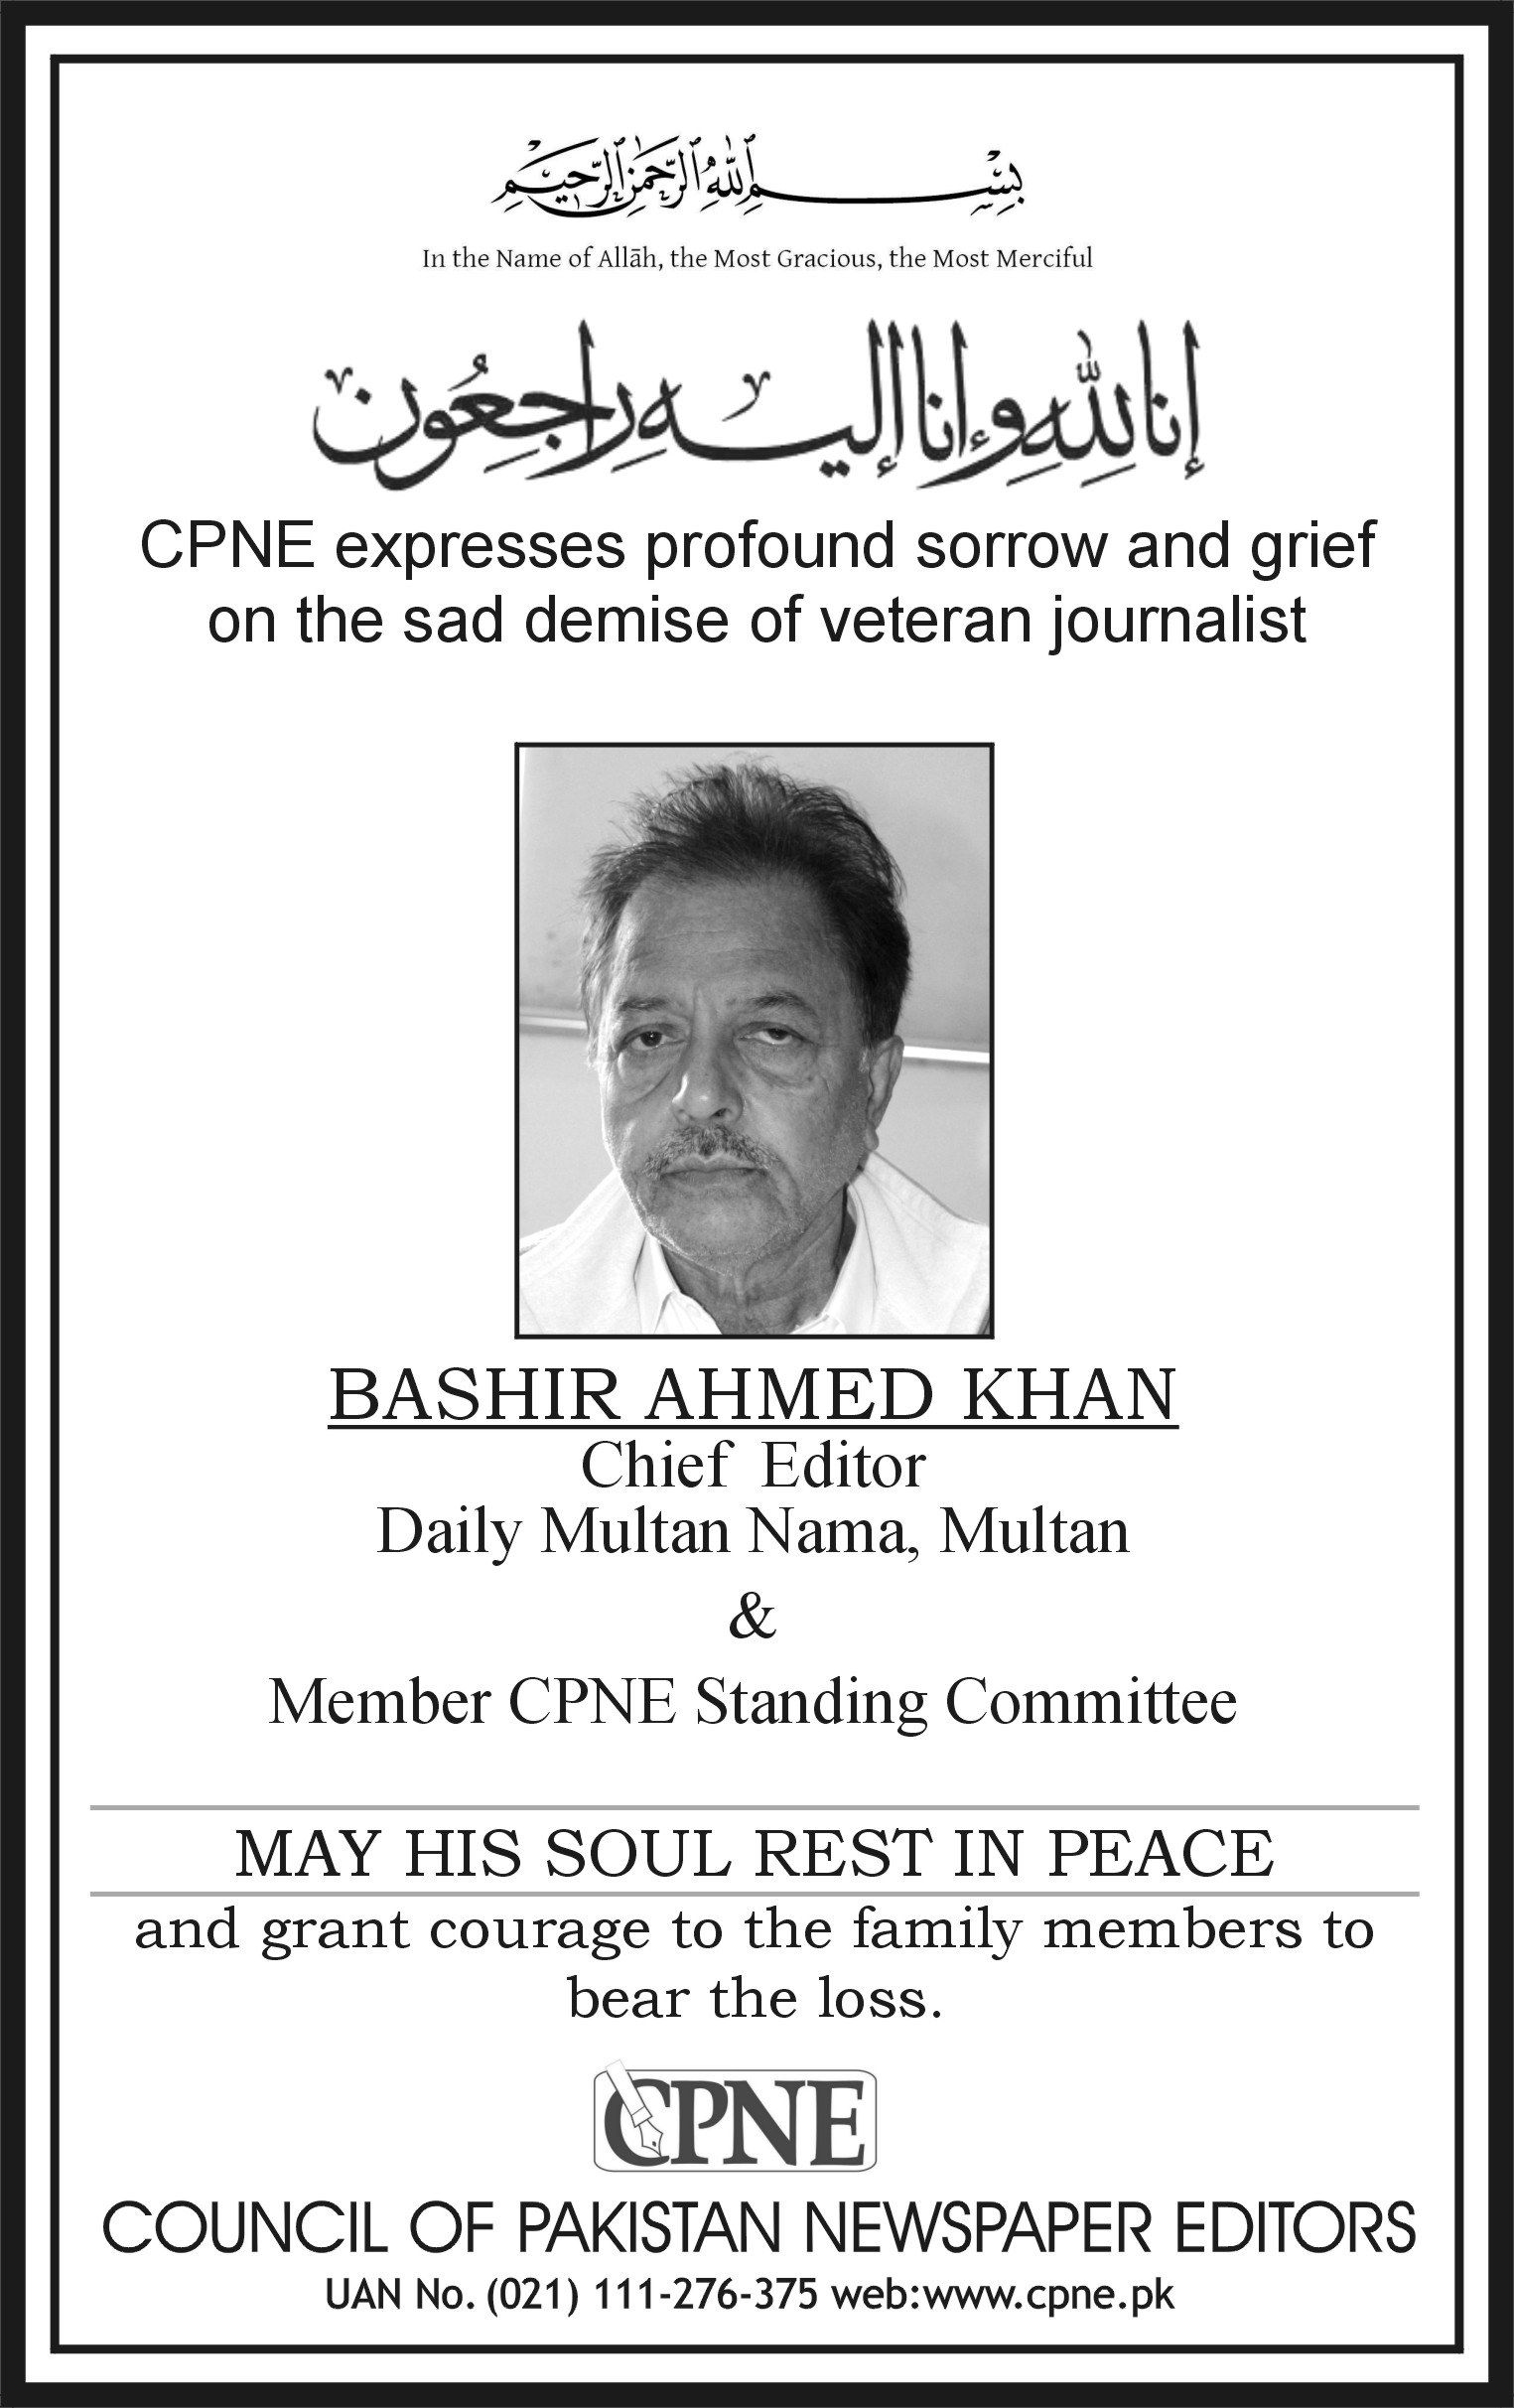 سی پی این ای کی روزنامہ ملتان نامہ ملتان کے چیف ایڈیٹر بشیر احمد خان کے انتقال پر اظہار تعزیت